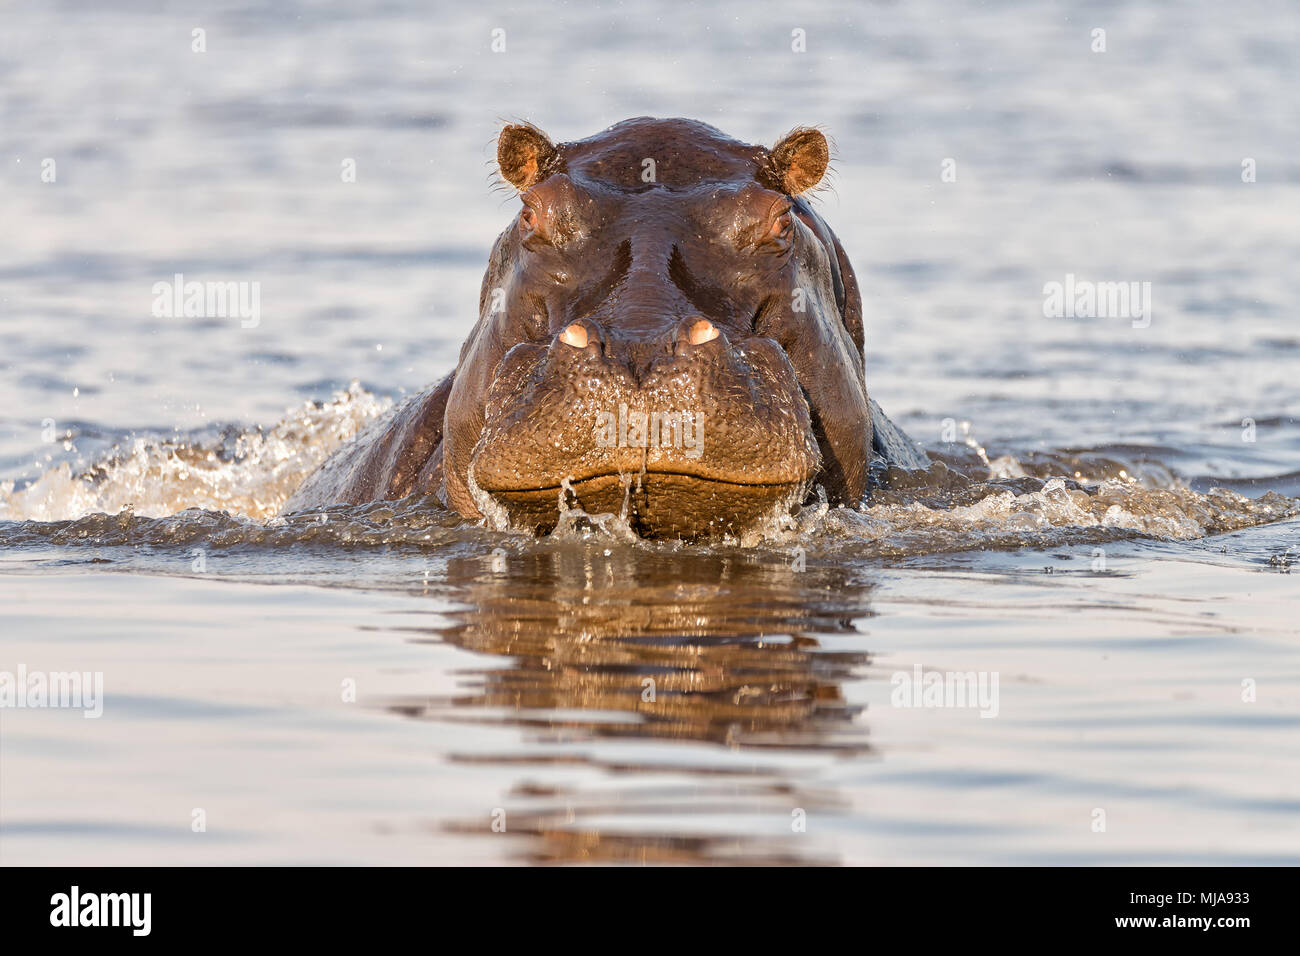 Angry hippopotamus (Hippopotamus amphibius) charging the boat on the Chobe River between Namibia and Botswana. Stock Photo